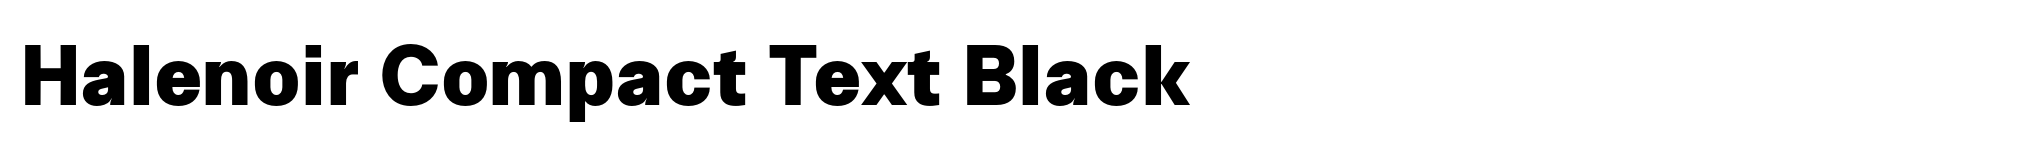 Halenoir Compact Text Black image